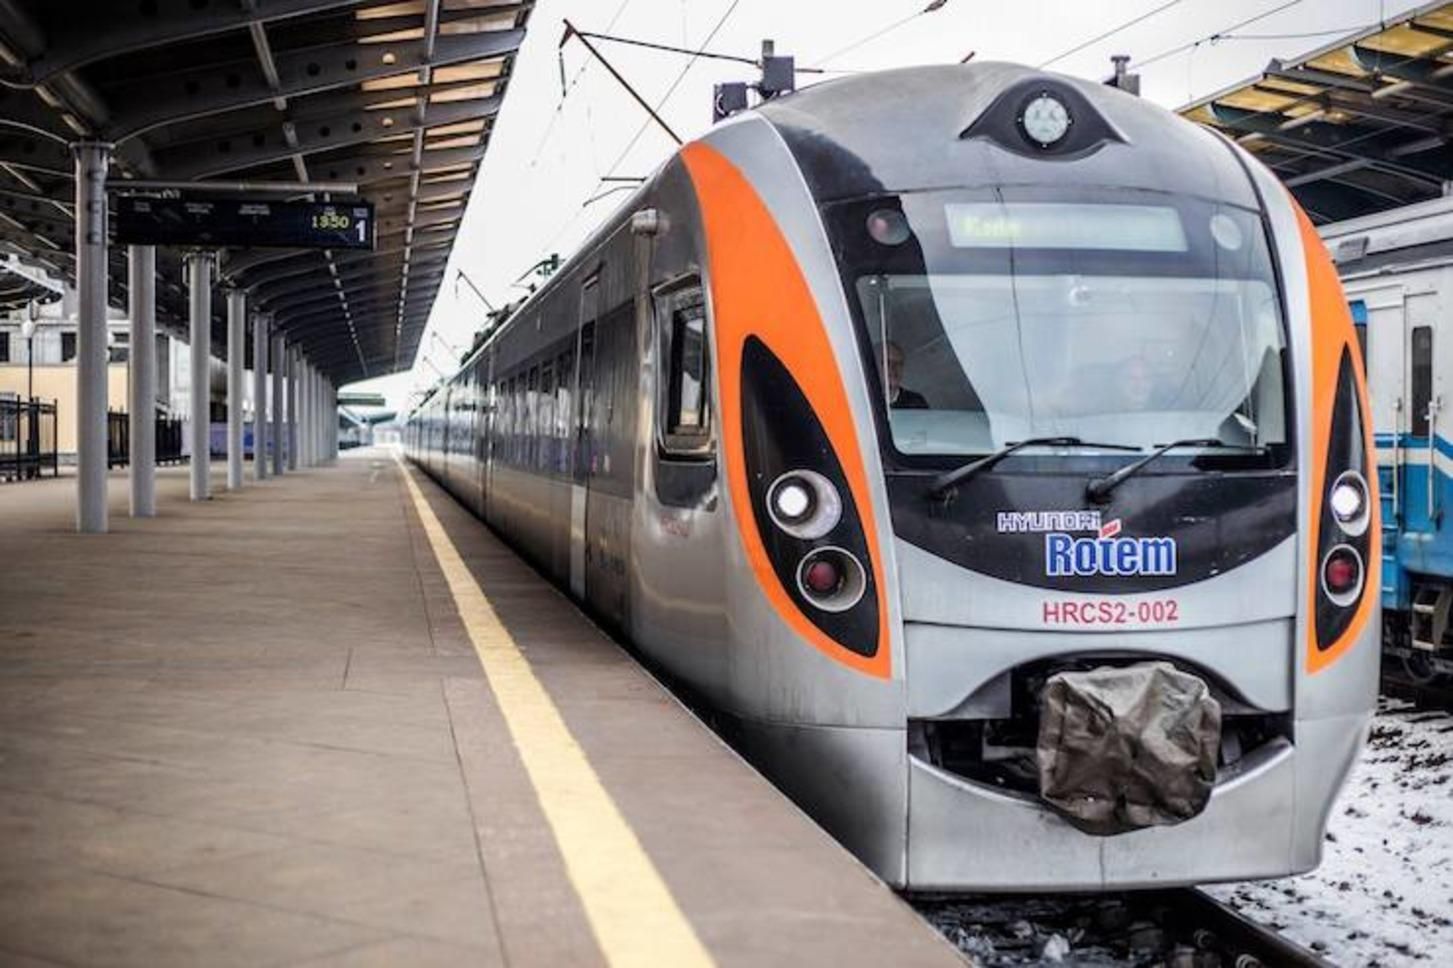 К 2024 году скоростные поезда будут курсировать между всеми облцентрами Украины